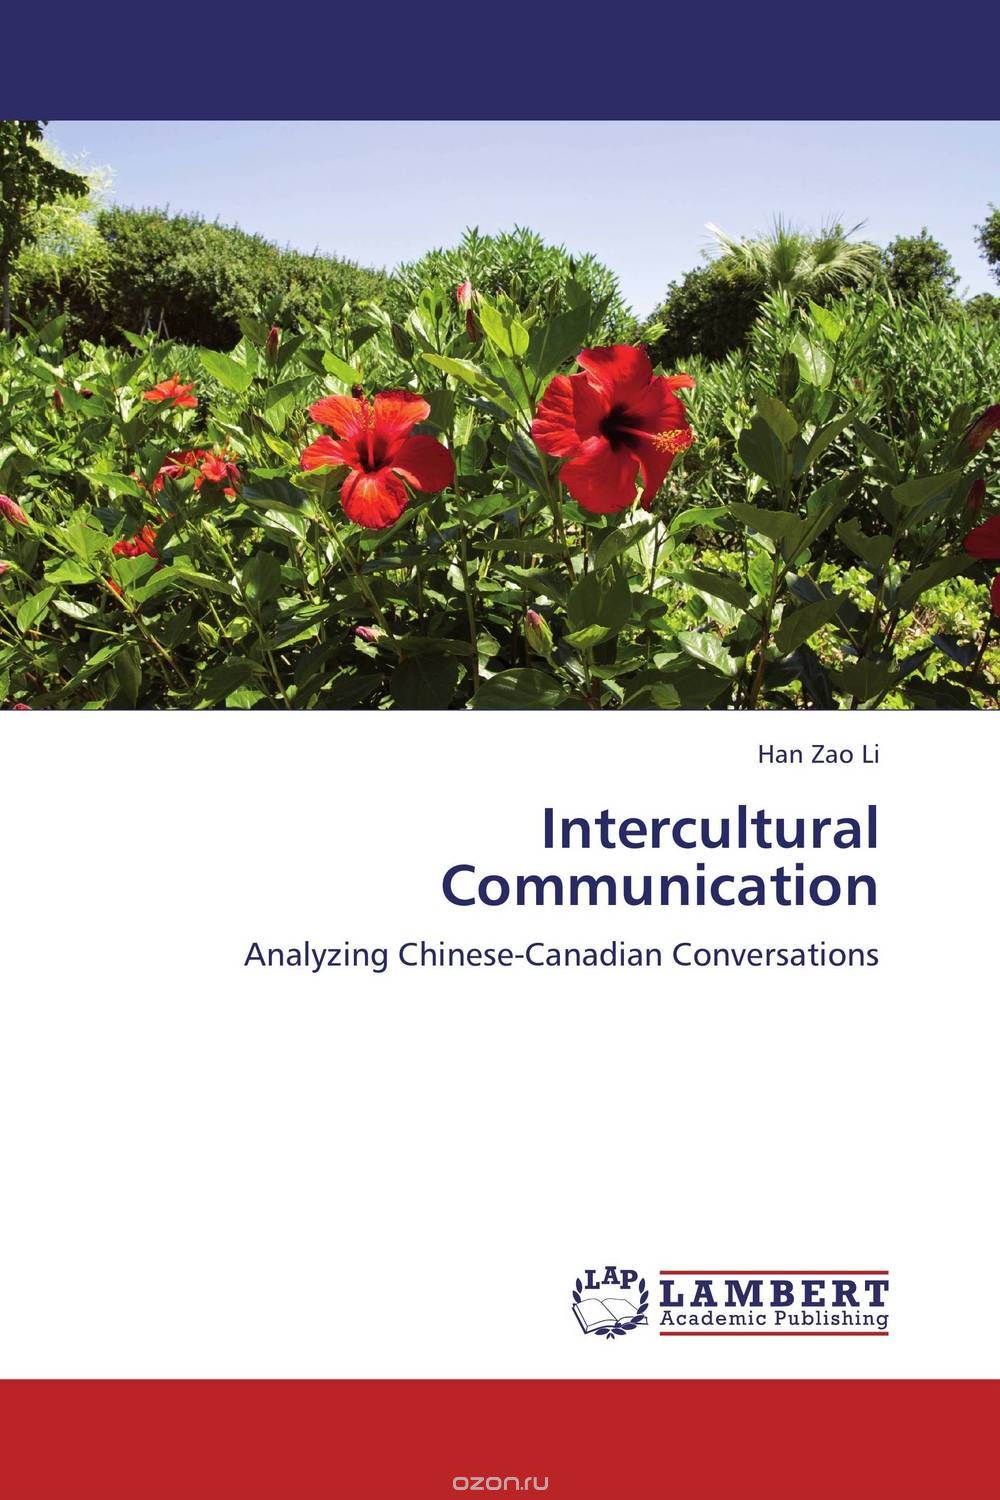 Скачать книгу "Intercultural Communication"